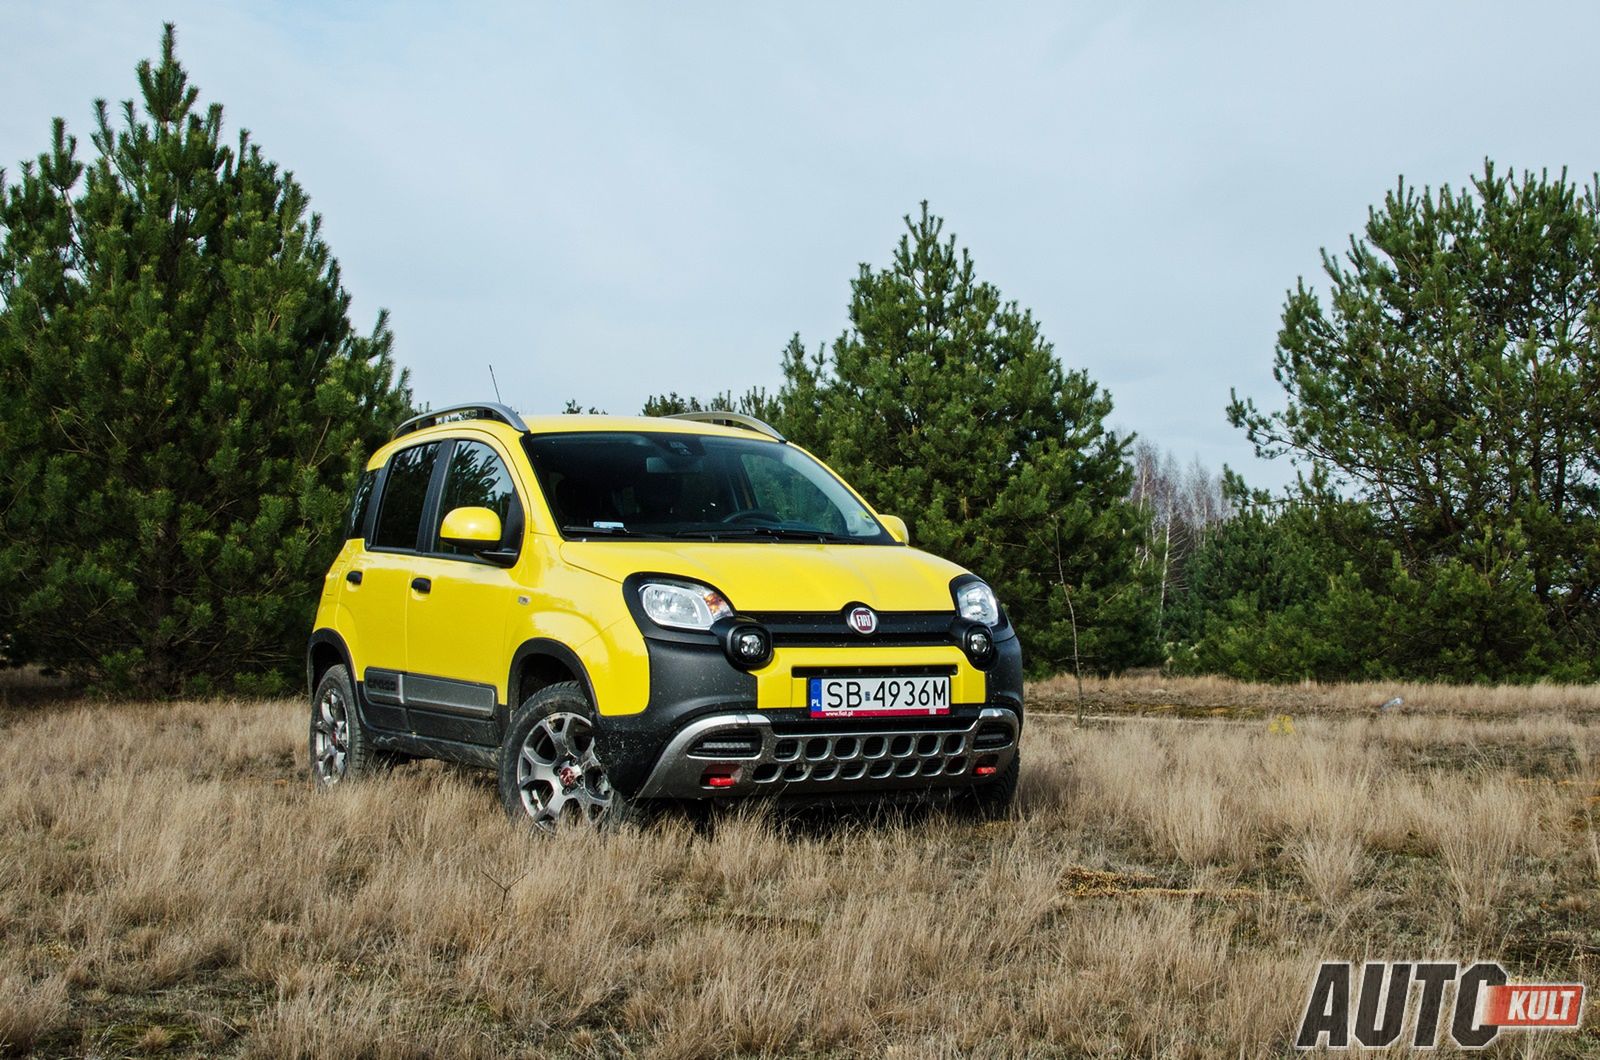 Fiat Panda Cross 4X4 – Potrafi Poprawić Nastrój | Autokult.pl